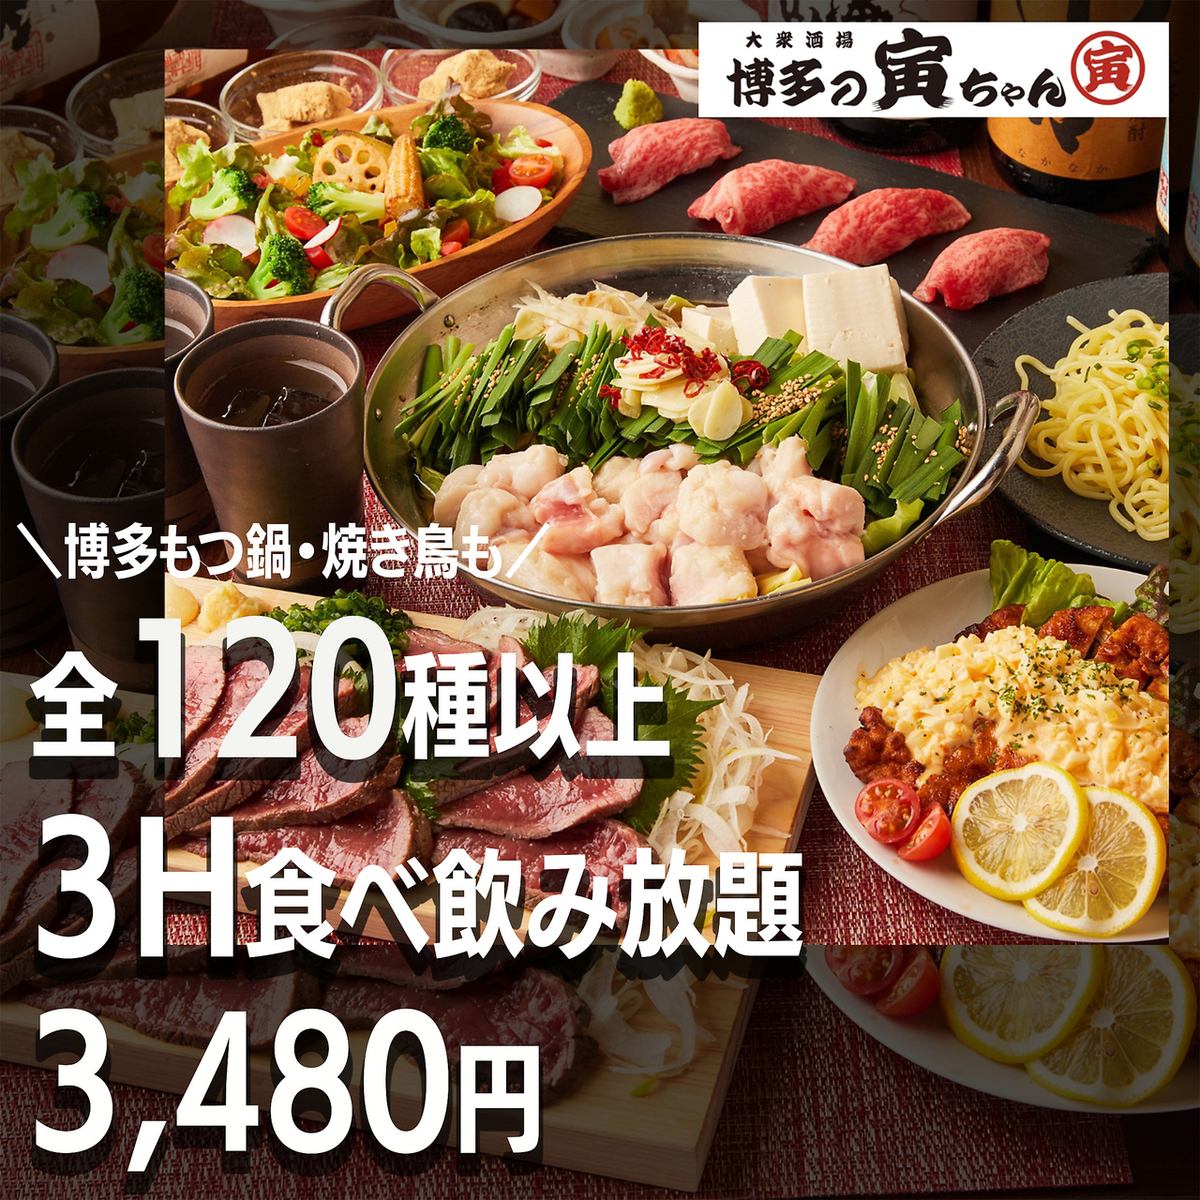 距離橫濱站3分鐘♪ 可以享用正宗內臟火鍋和嚴選烤雞肉串的人氣博多居酒屋開業了！